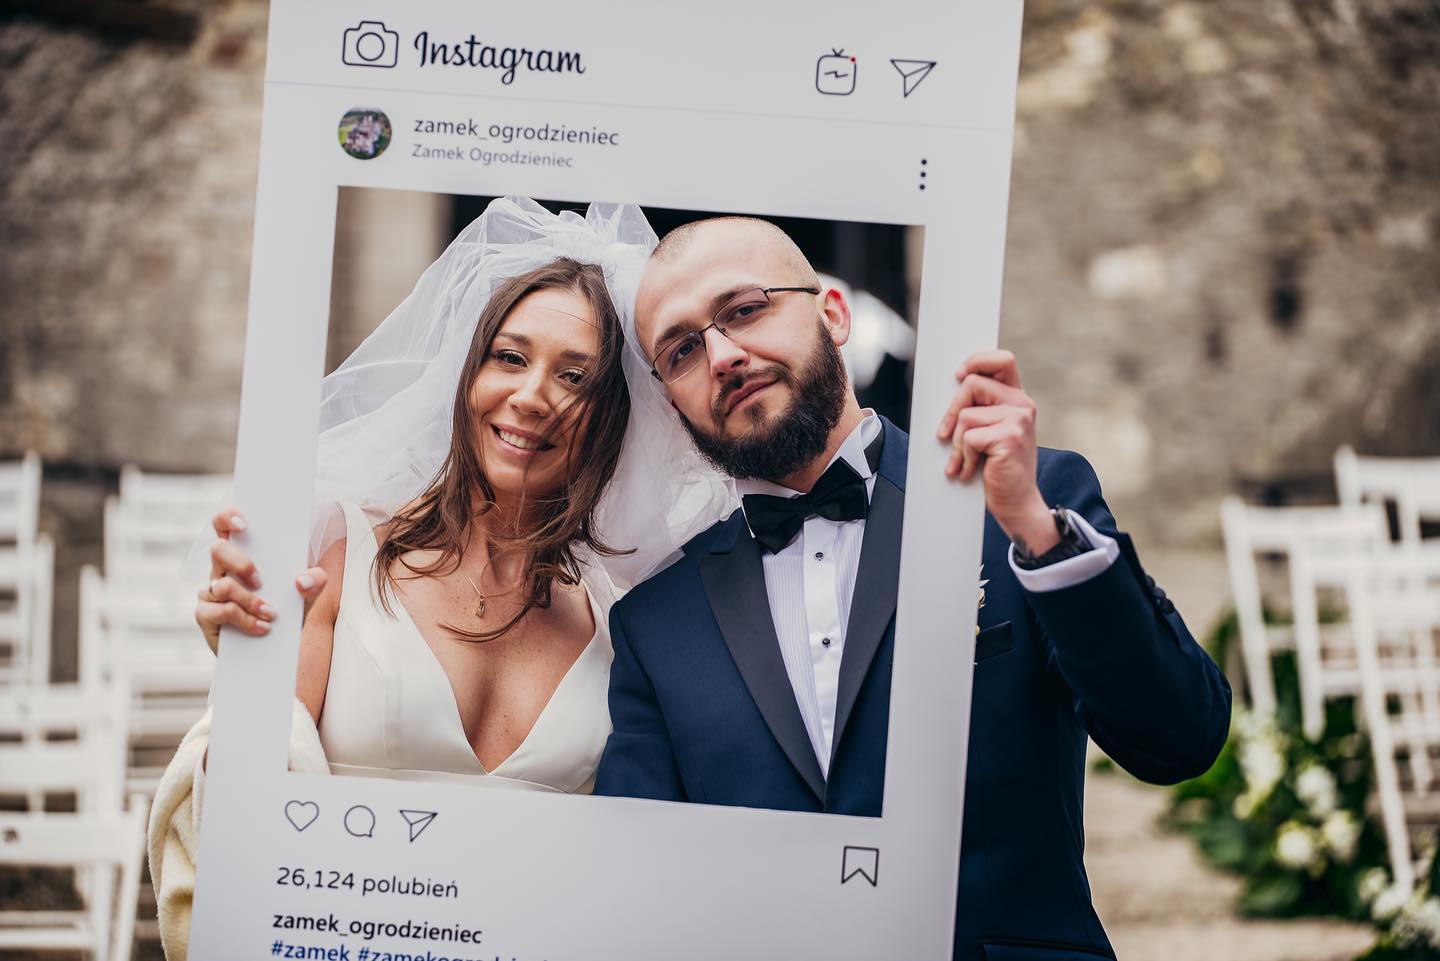 Ślub od pierwszego wejrzenia, fot. Instagram